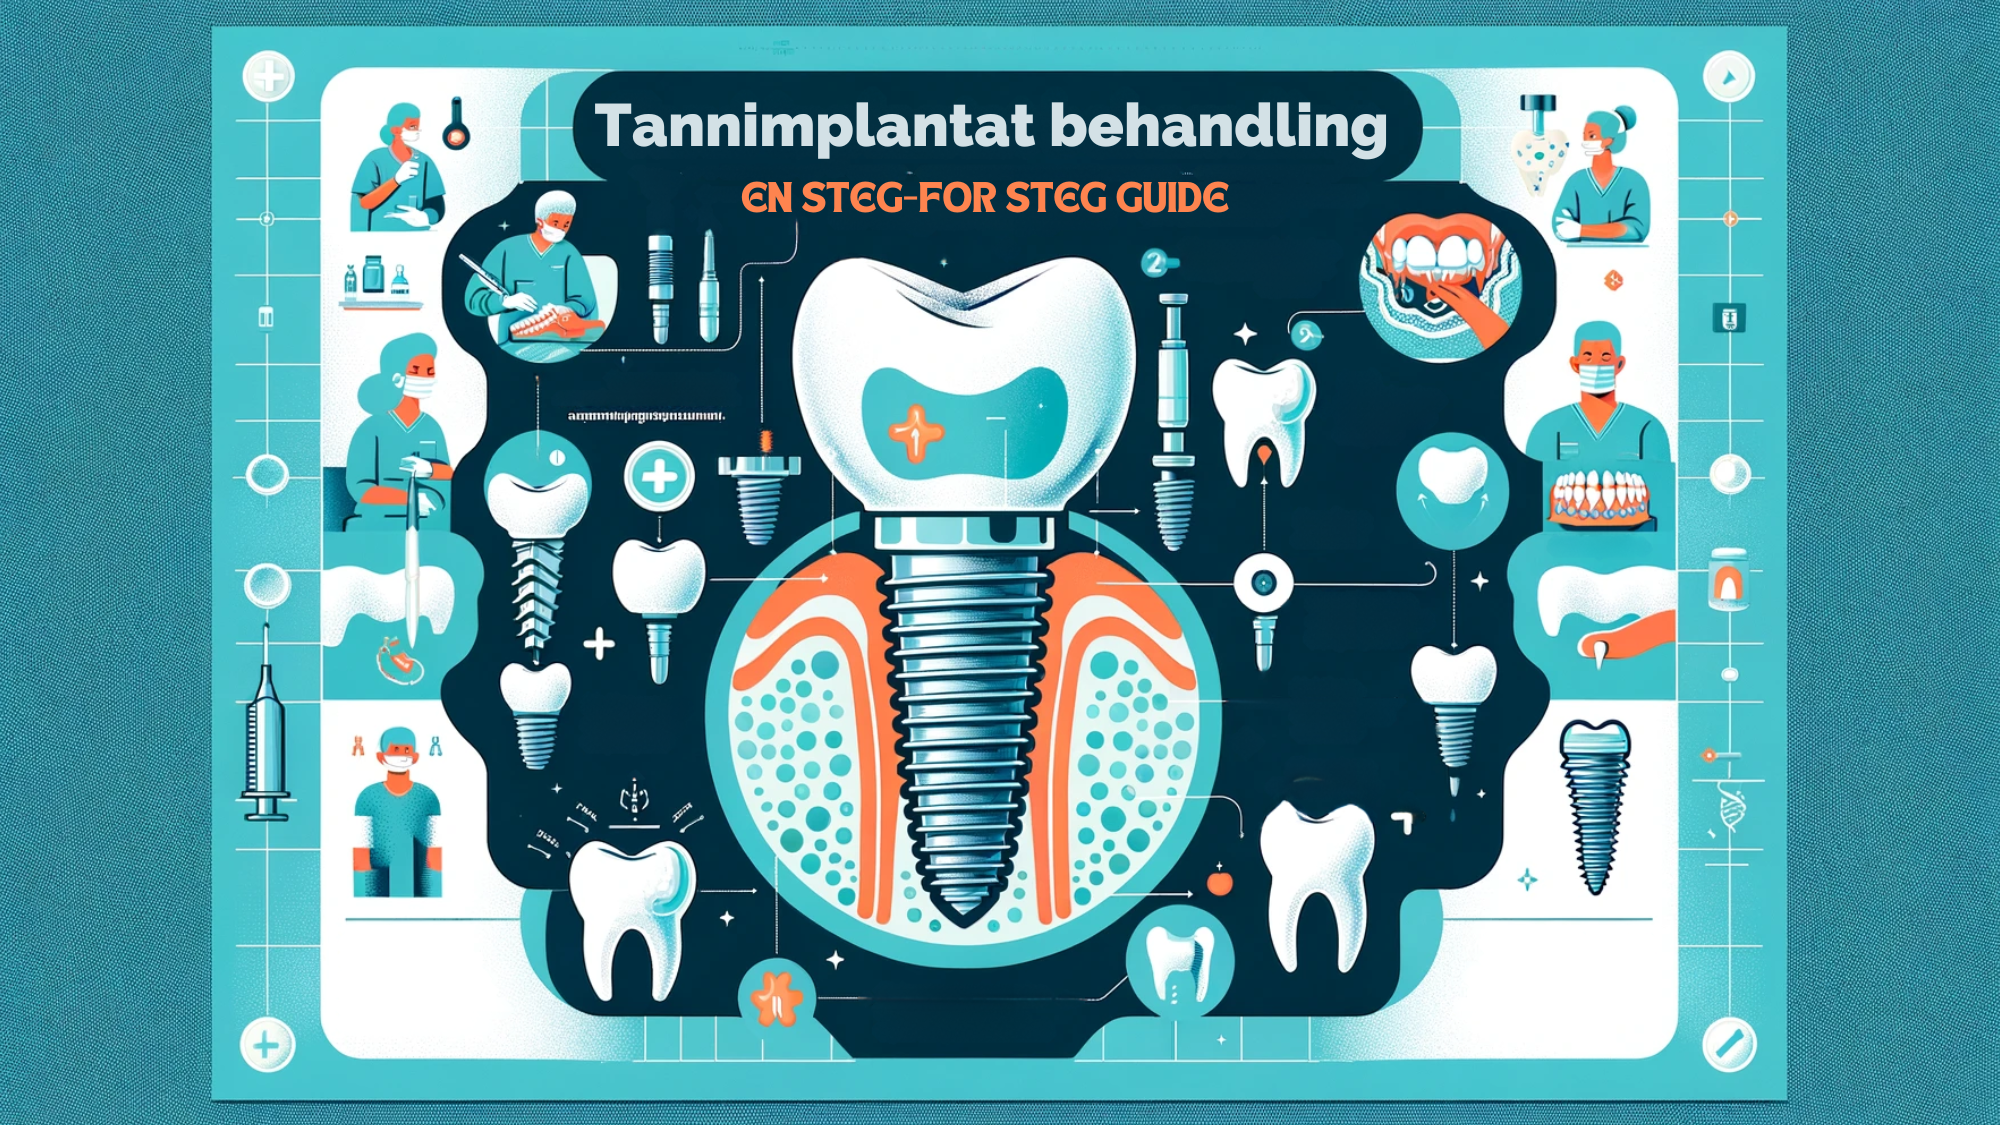 Infografikk med trinn-for-trinn veiledning for tannimplantatbehandling, med designelementer i blått og grønt.